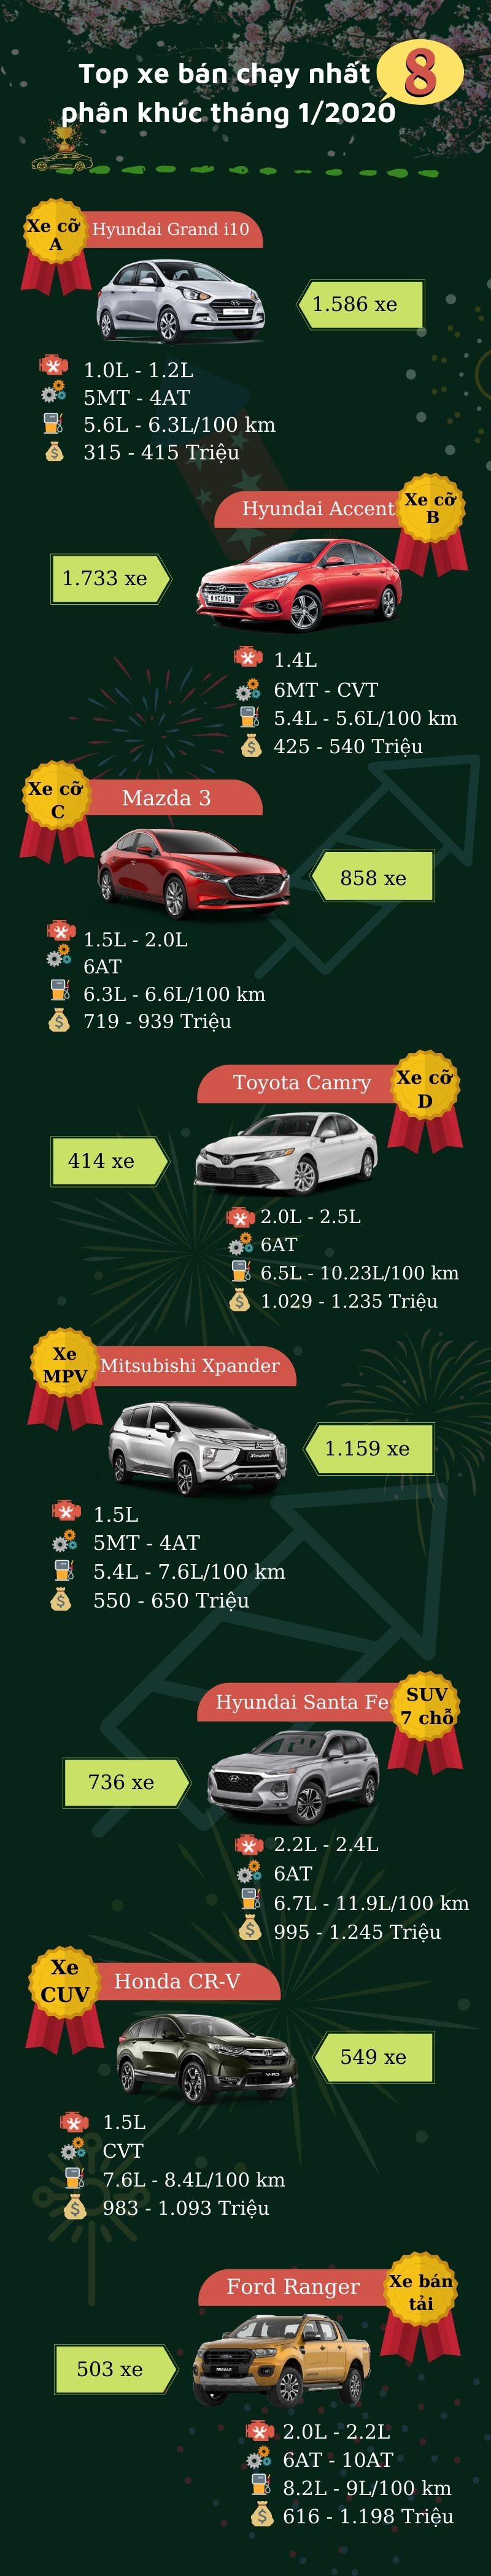 Infographic: Danh sách các mẫu xe bán chạy nhất 8 phân khúc tháng 1/2020